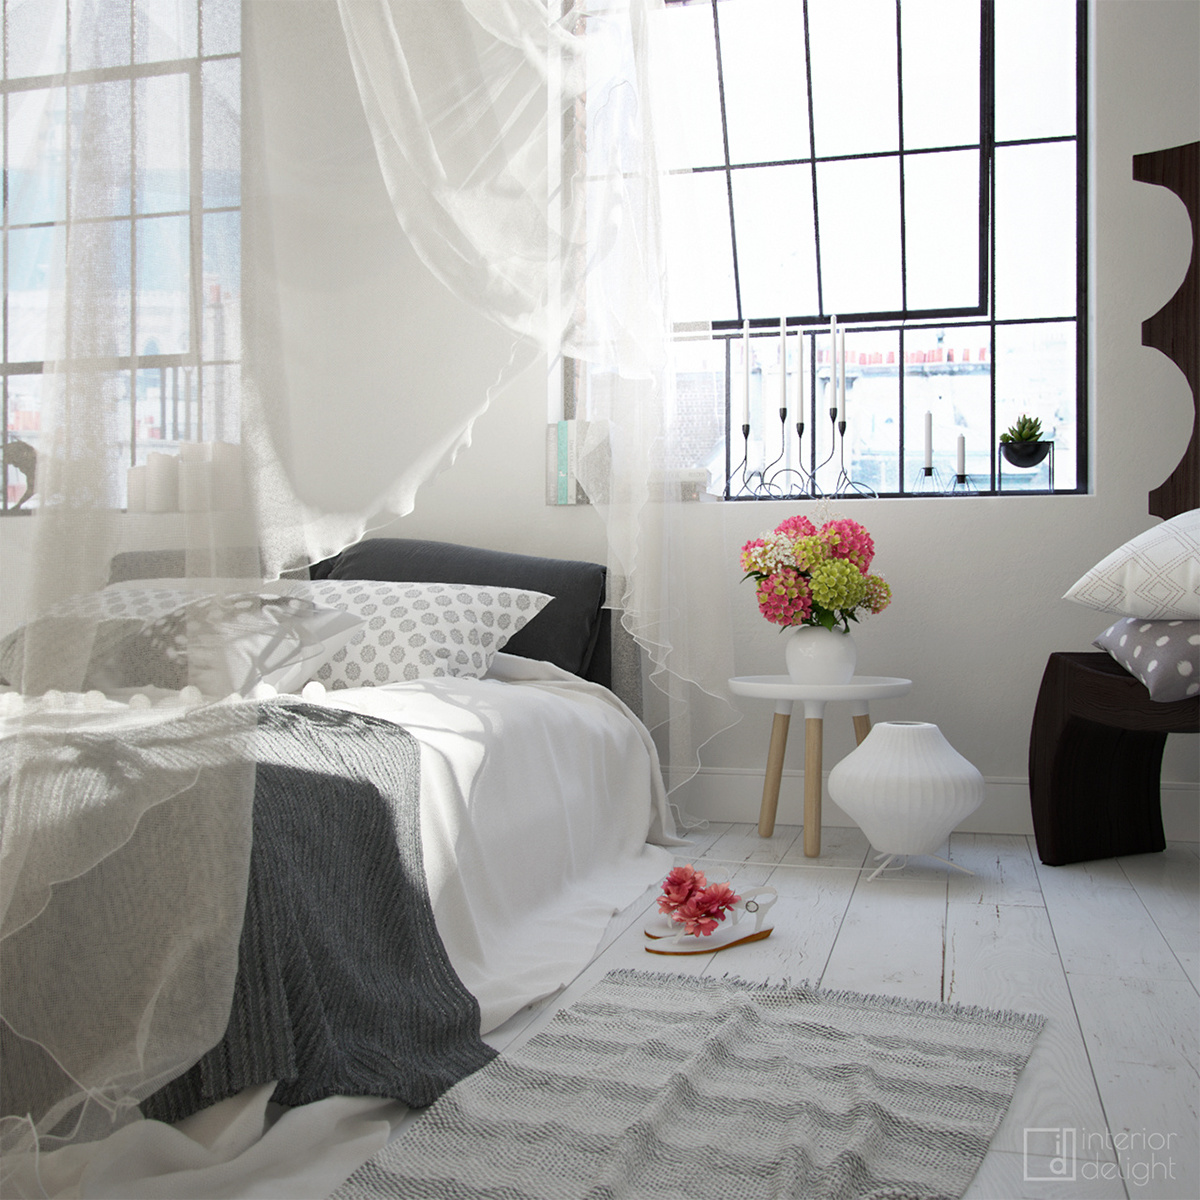 Interior design styling  rendering 3D industrial bedroom